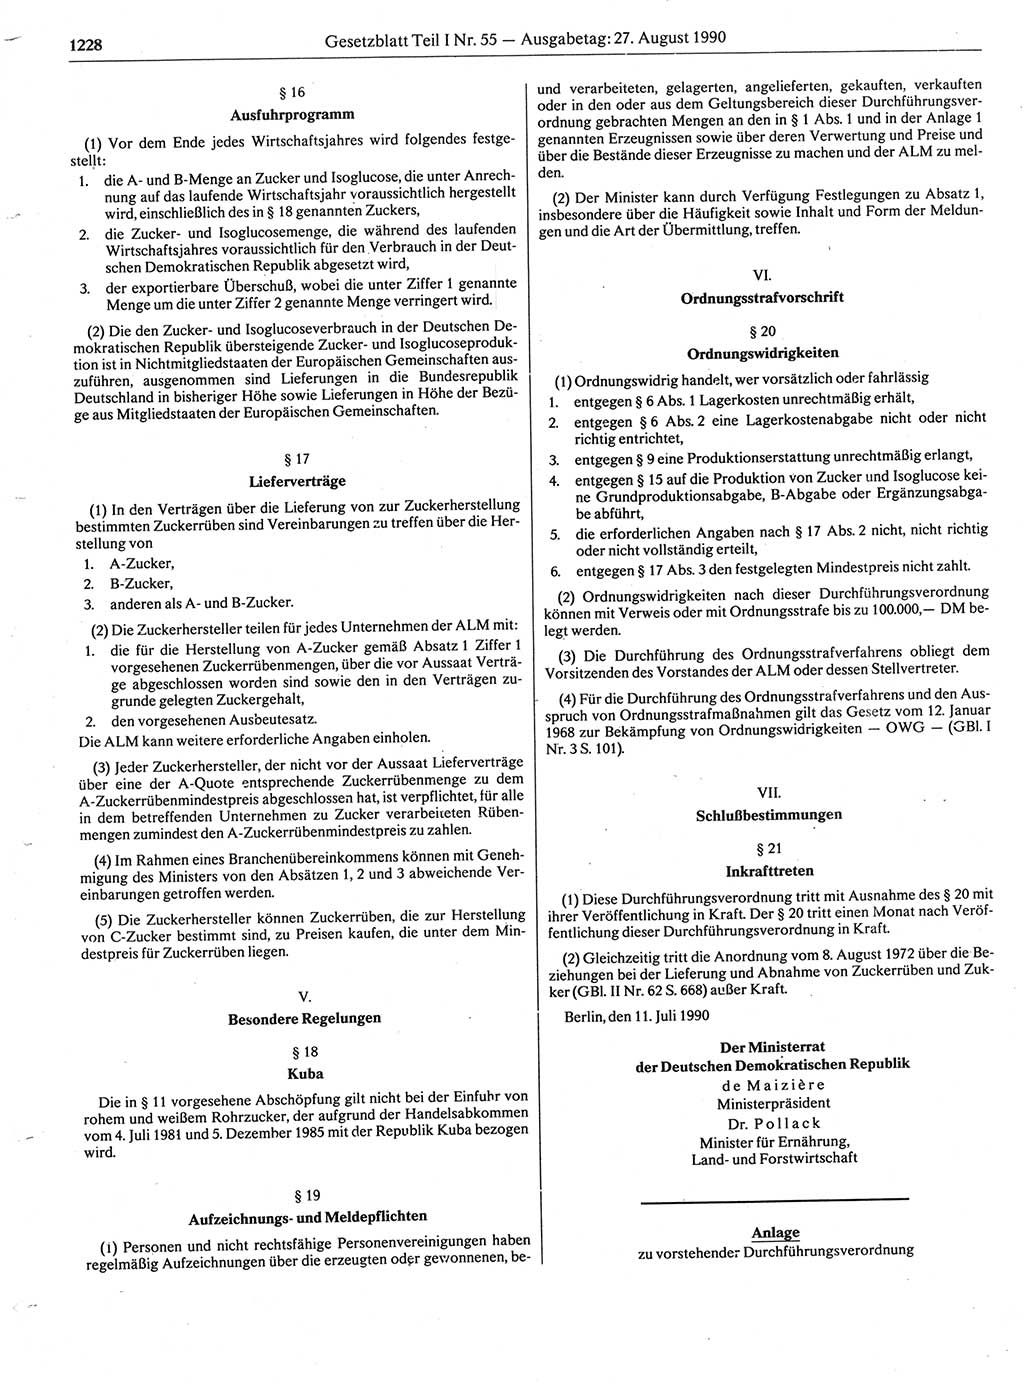 Gesetzblatt (GBl.) der Deutschen Demokratischen Republik (DDR) Teil Ⅰ 1990, Seite 1228 (GBl. DDR Ⅰ 1990, S. 1228)